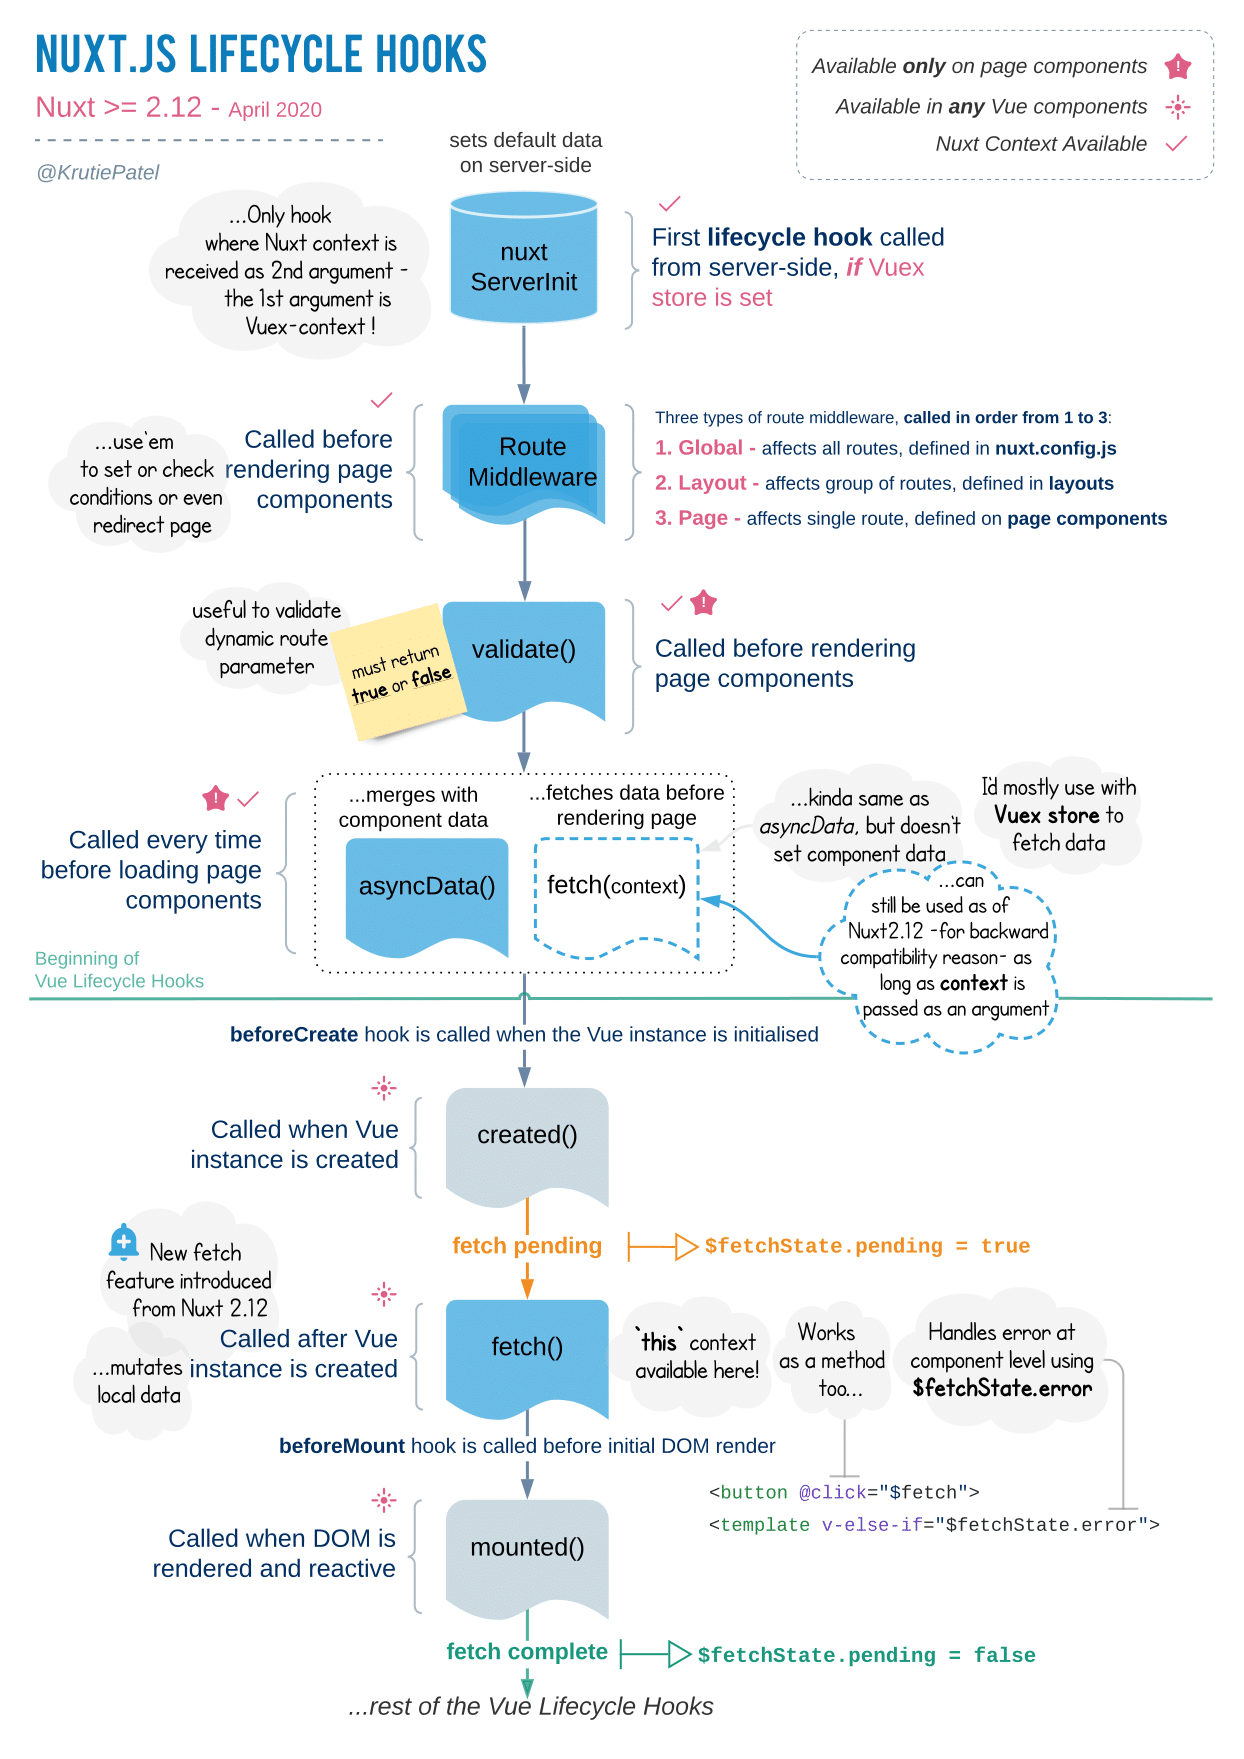 Uma visão geral do ciclo de vida dos hooks Nuxt.js.